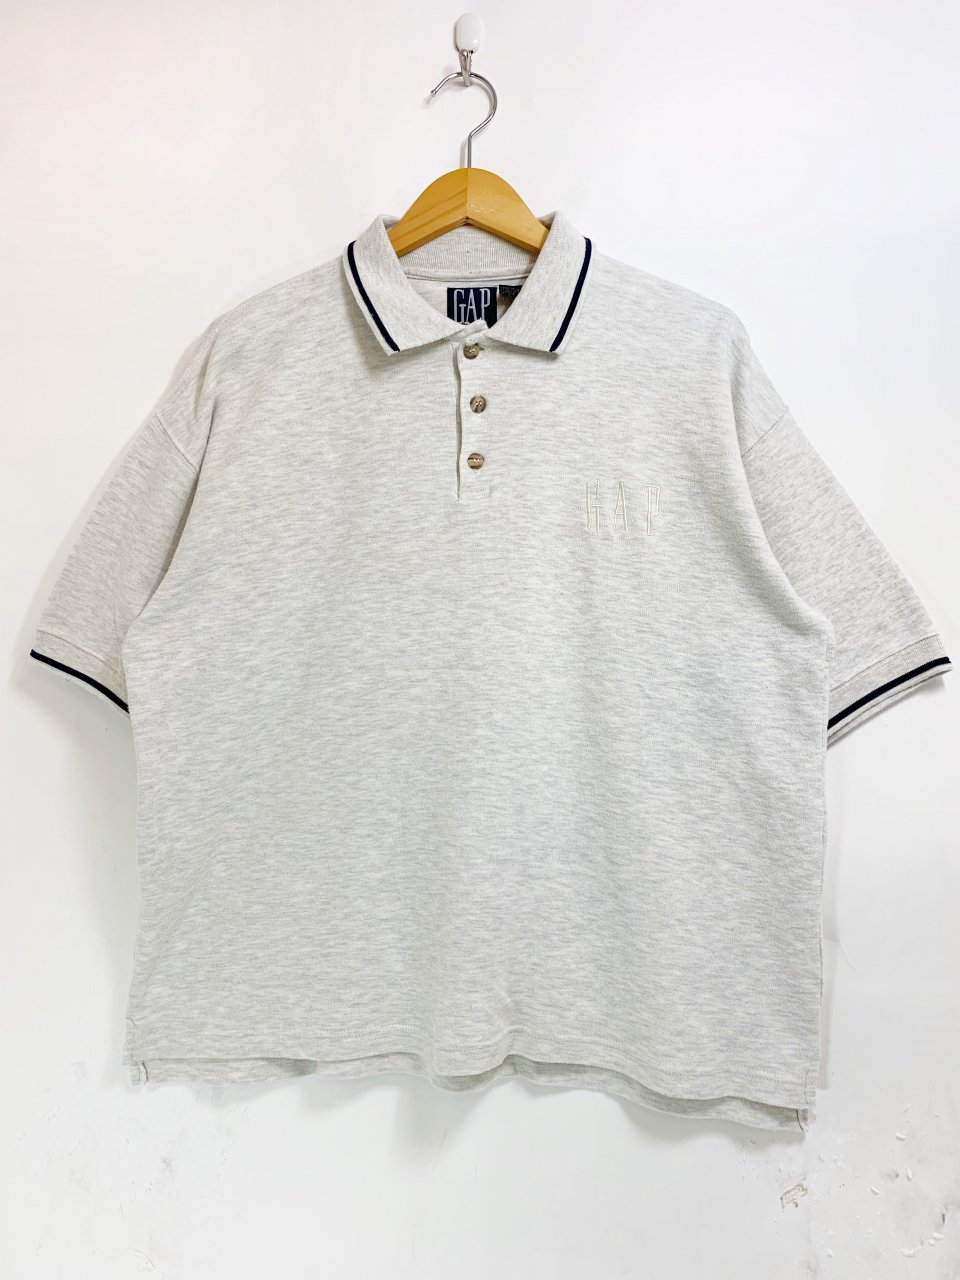 90s OLD GAP Cotton Logo S/S Polo Shirt 灰 L オールドギャップ 半袖 ポロシャツ ロゴ 刺繍 ワンポイント  デカタグ アッシュグレー - NEWJOKE ONLINE STORE